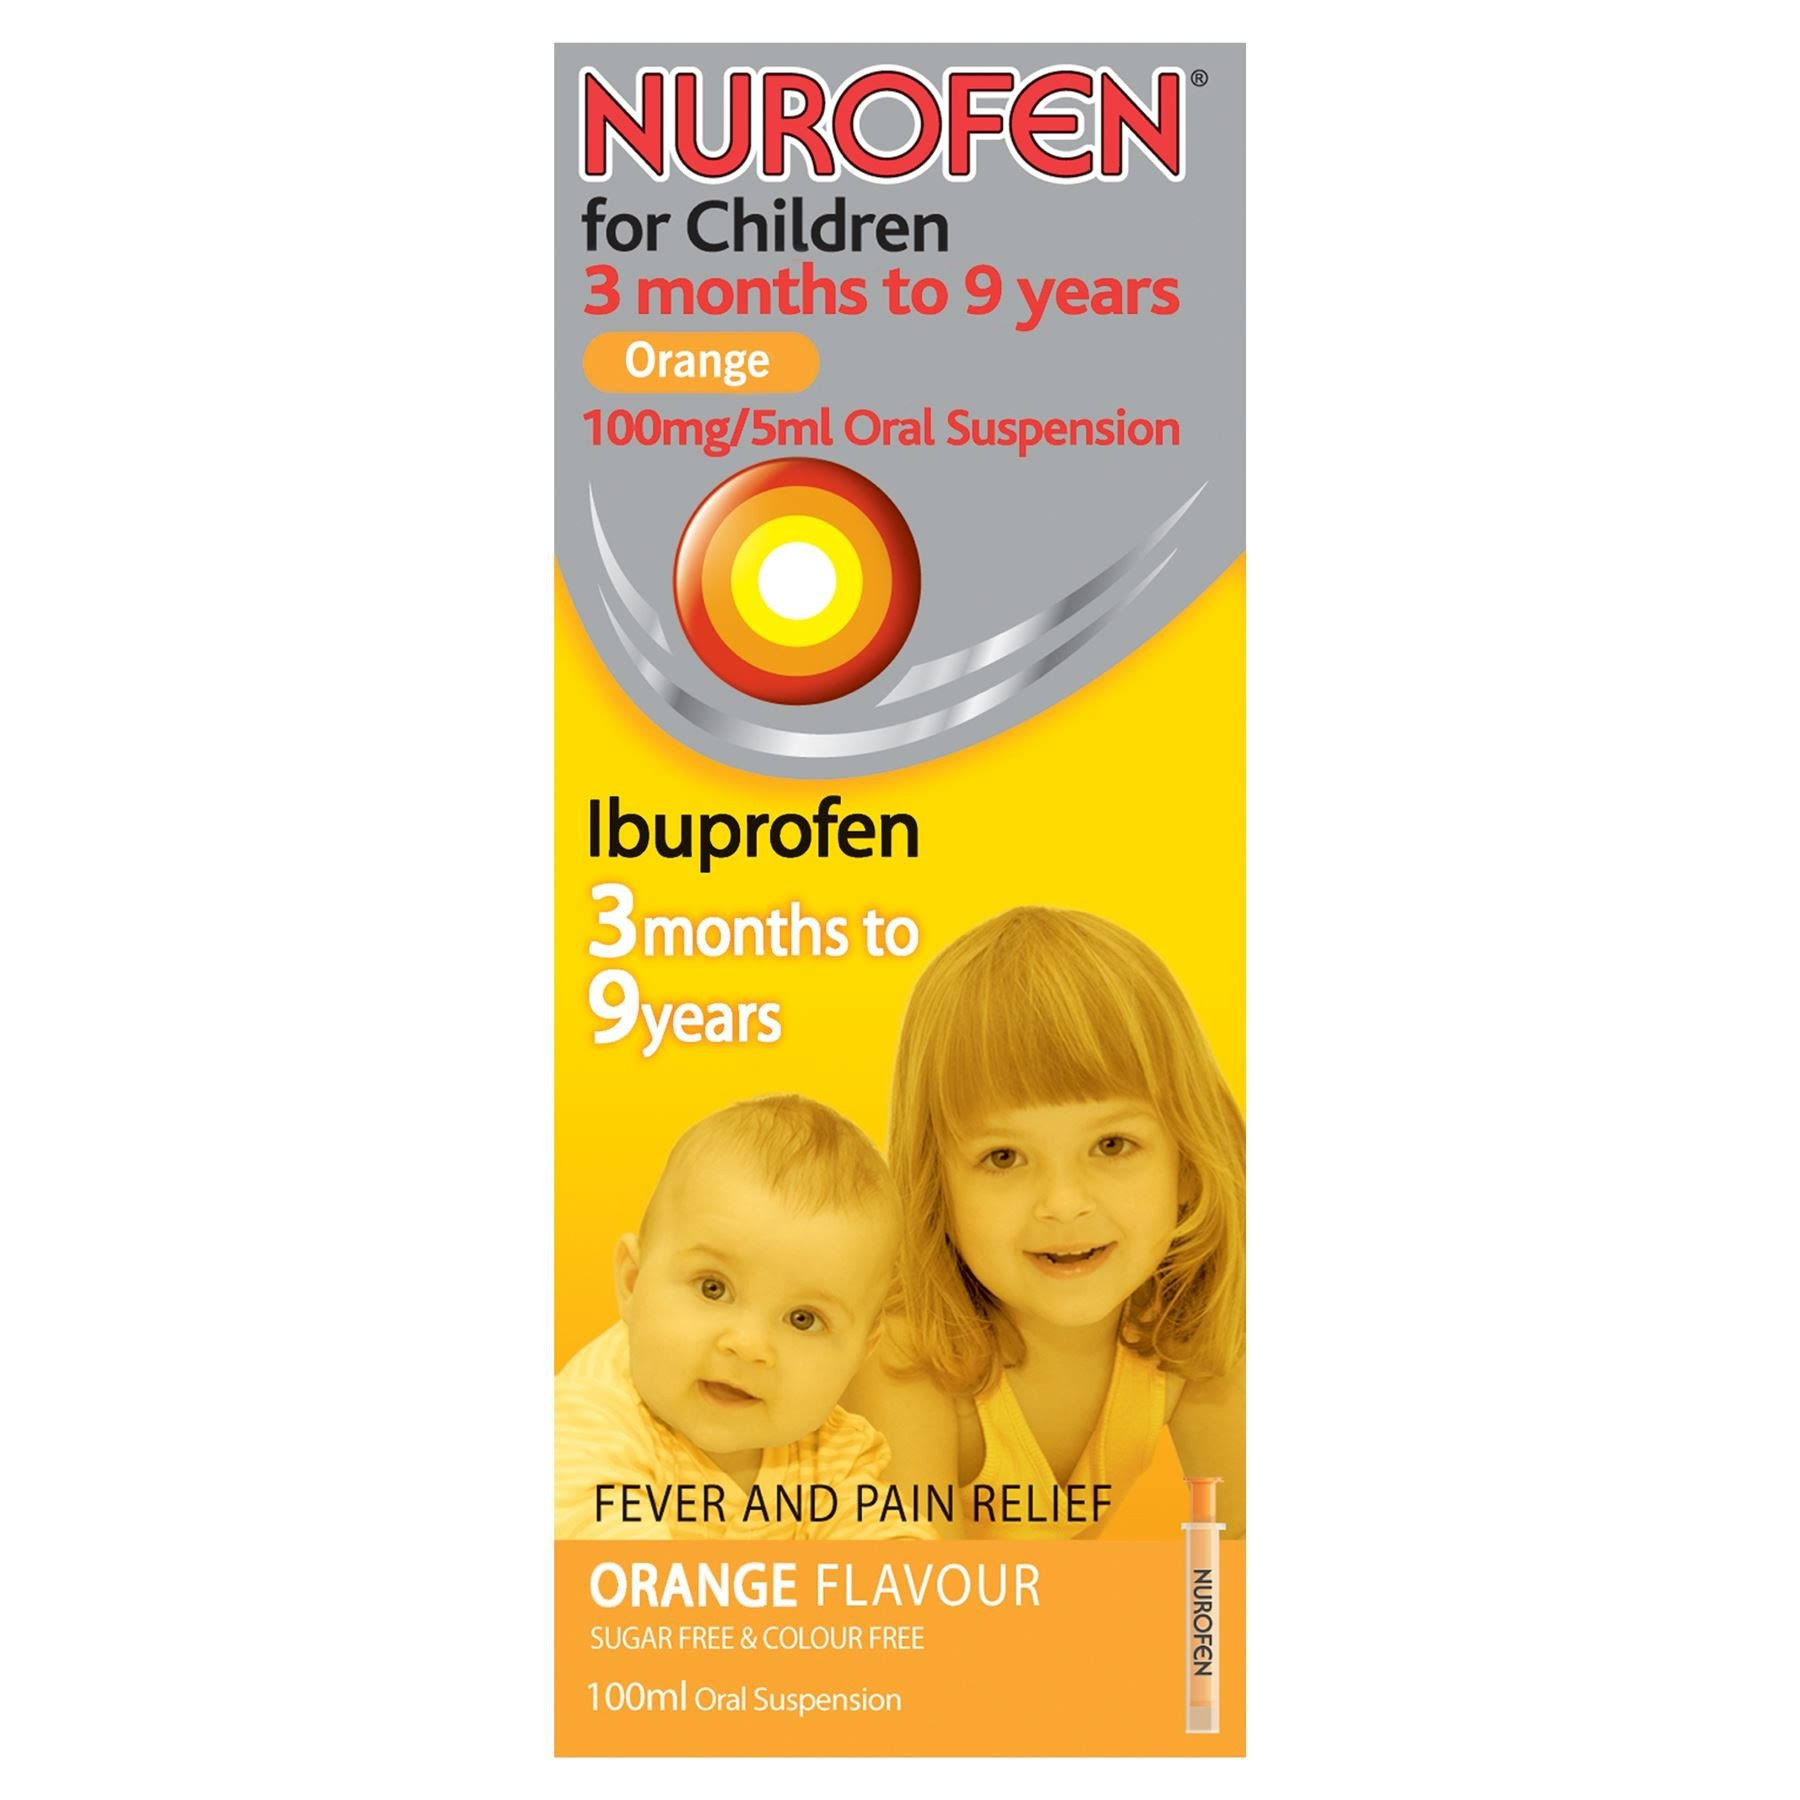 Nurofen Ibuprofen for Children - 3 Months to 9 Years, Orange